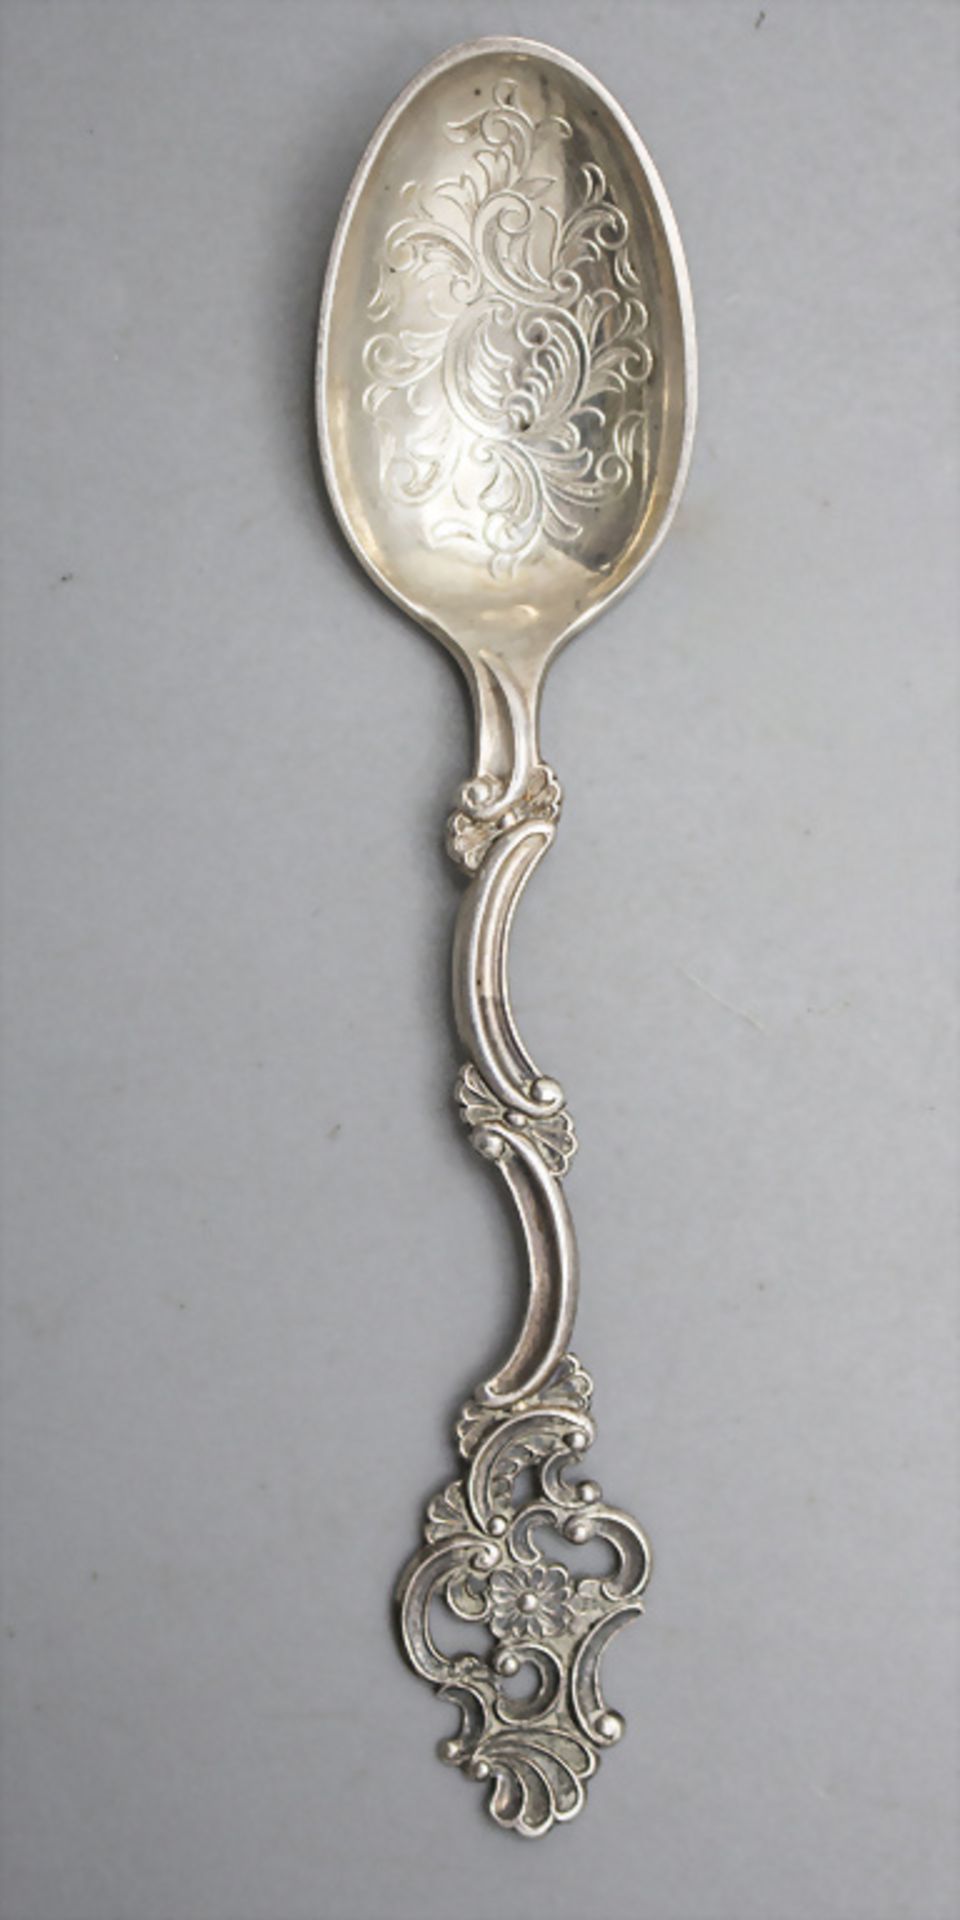 12 Teelöffel 'Fancy' / 12 silver tea spoons 'Fancy', Thorvald Marthinsen, Tonsberg, Norwegen, ... - Bild 2 aus 3